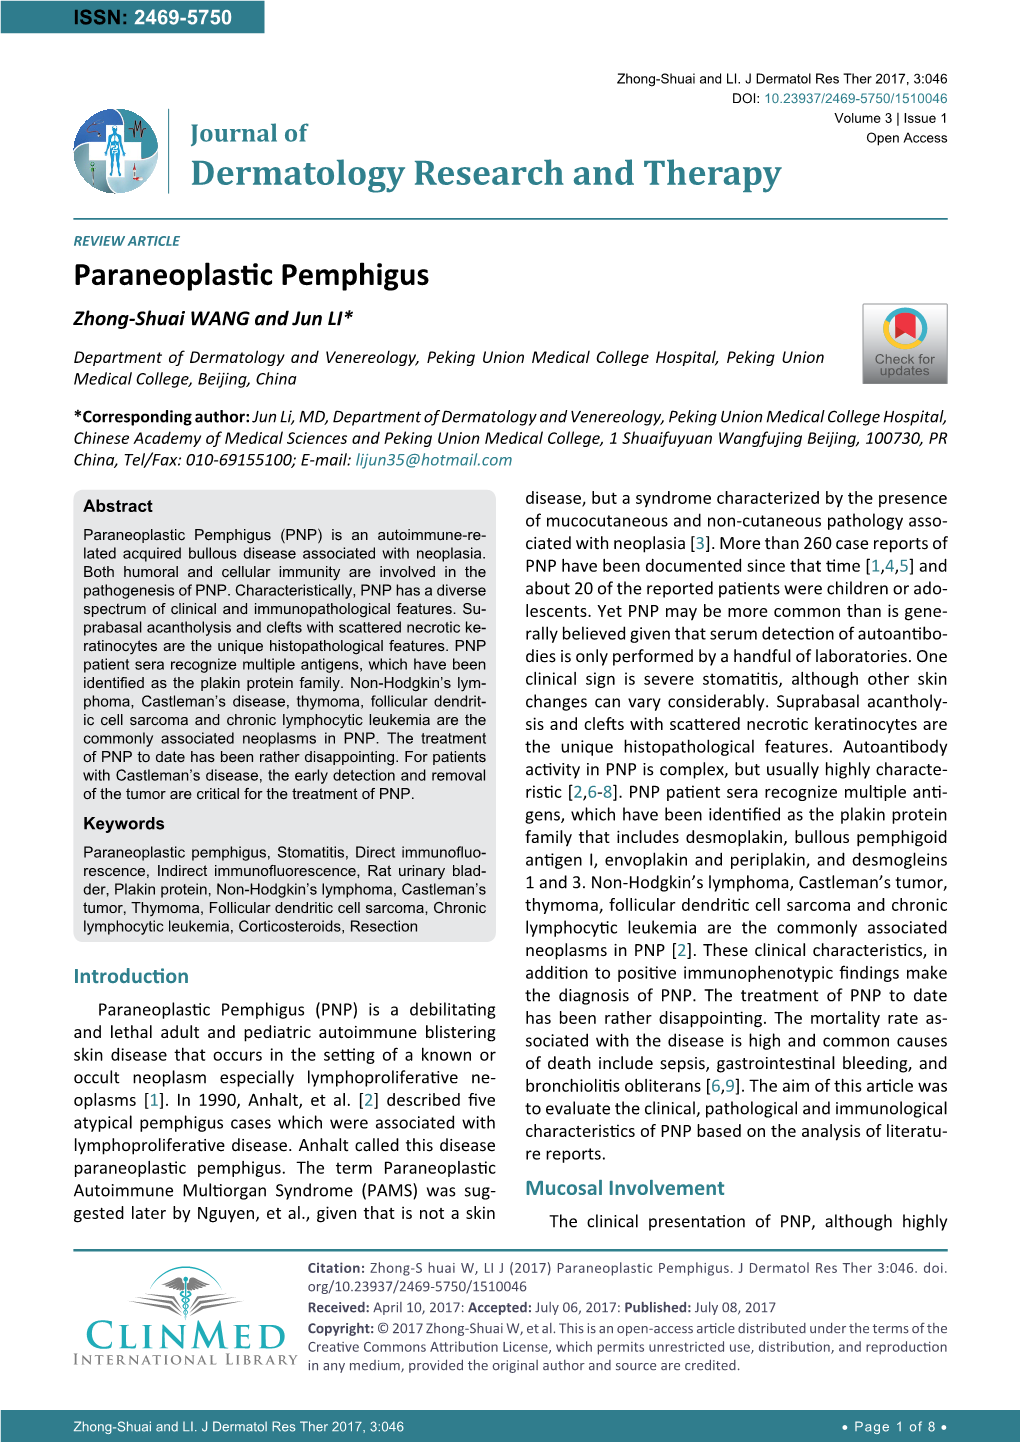 Paraneoplastic Pemphigus Zhong-Shuai WANG and Jun LI*